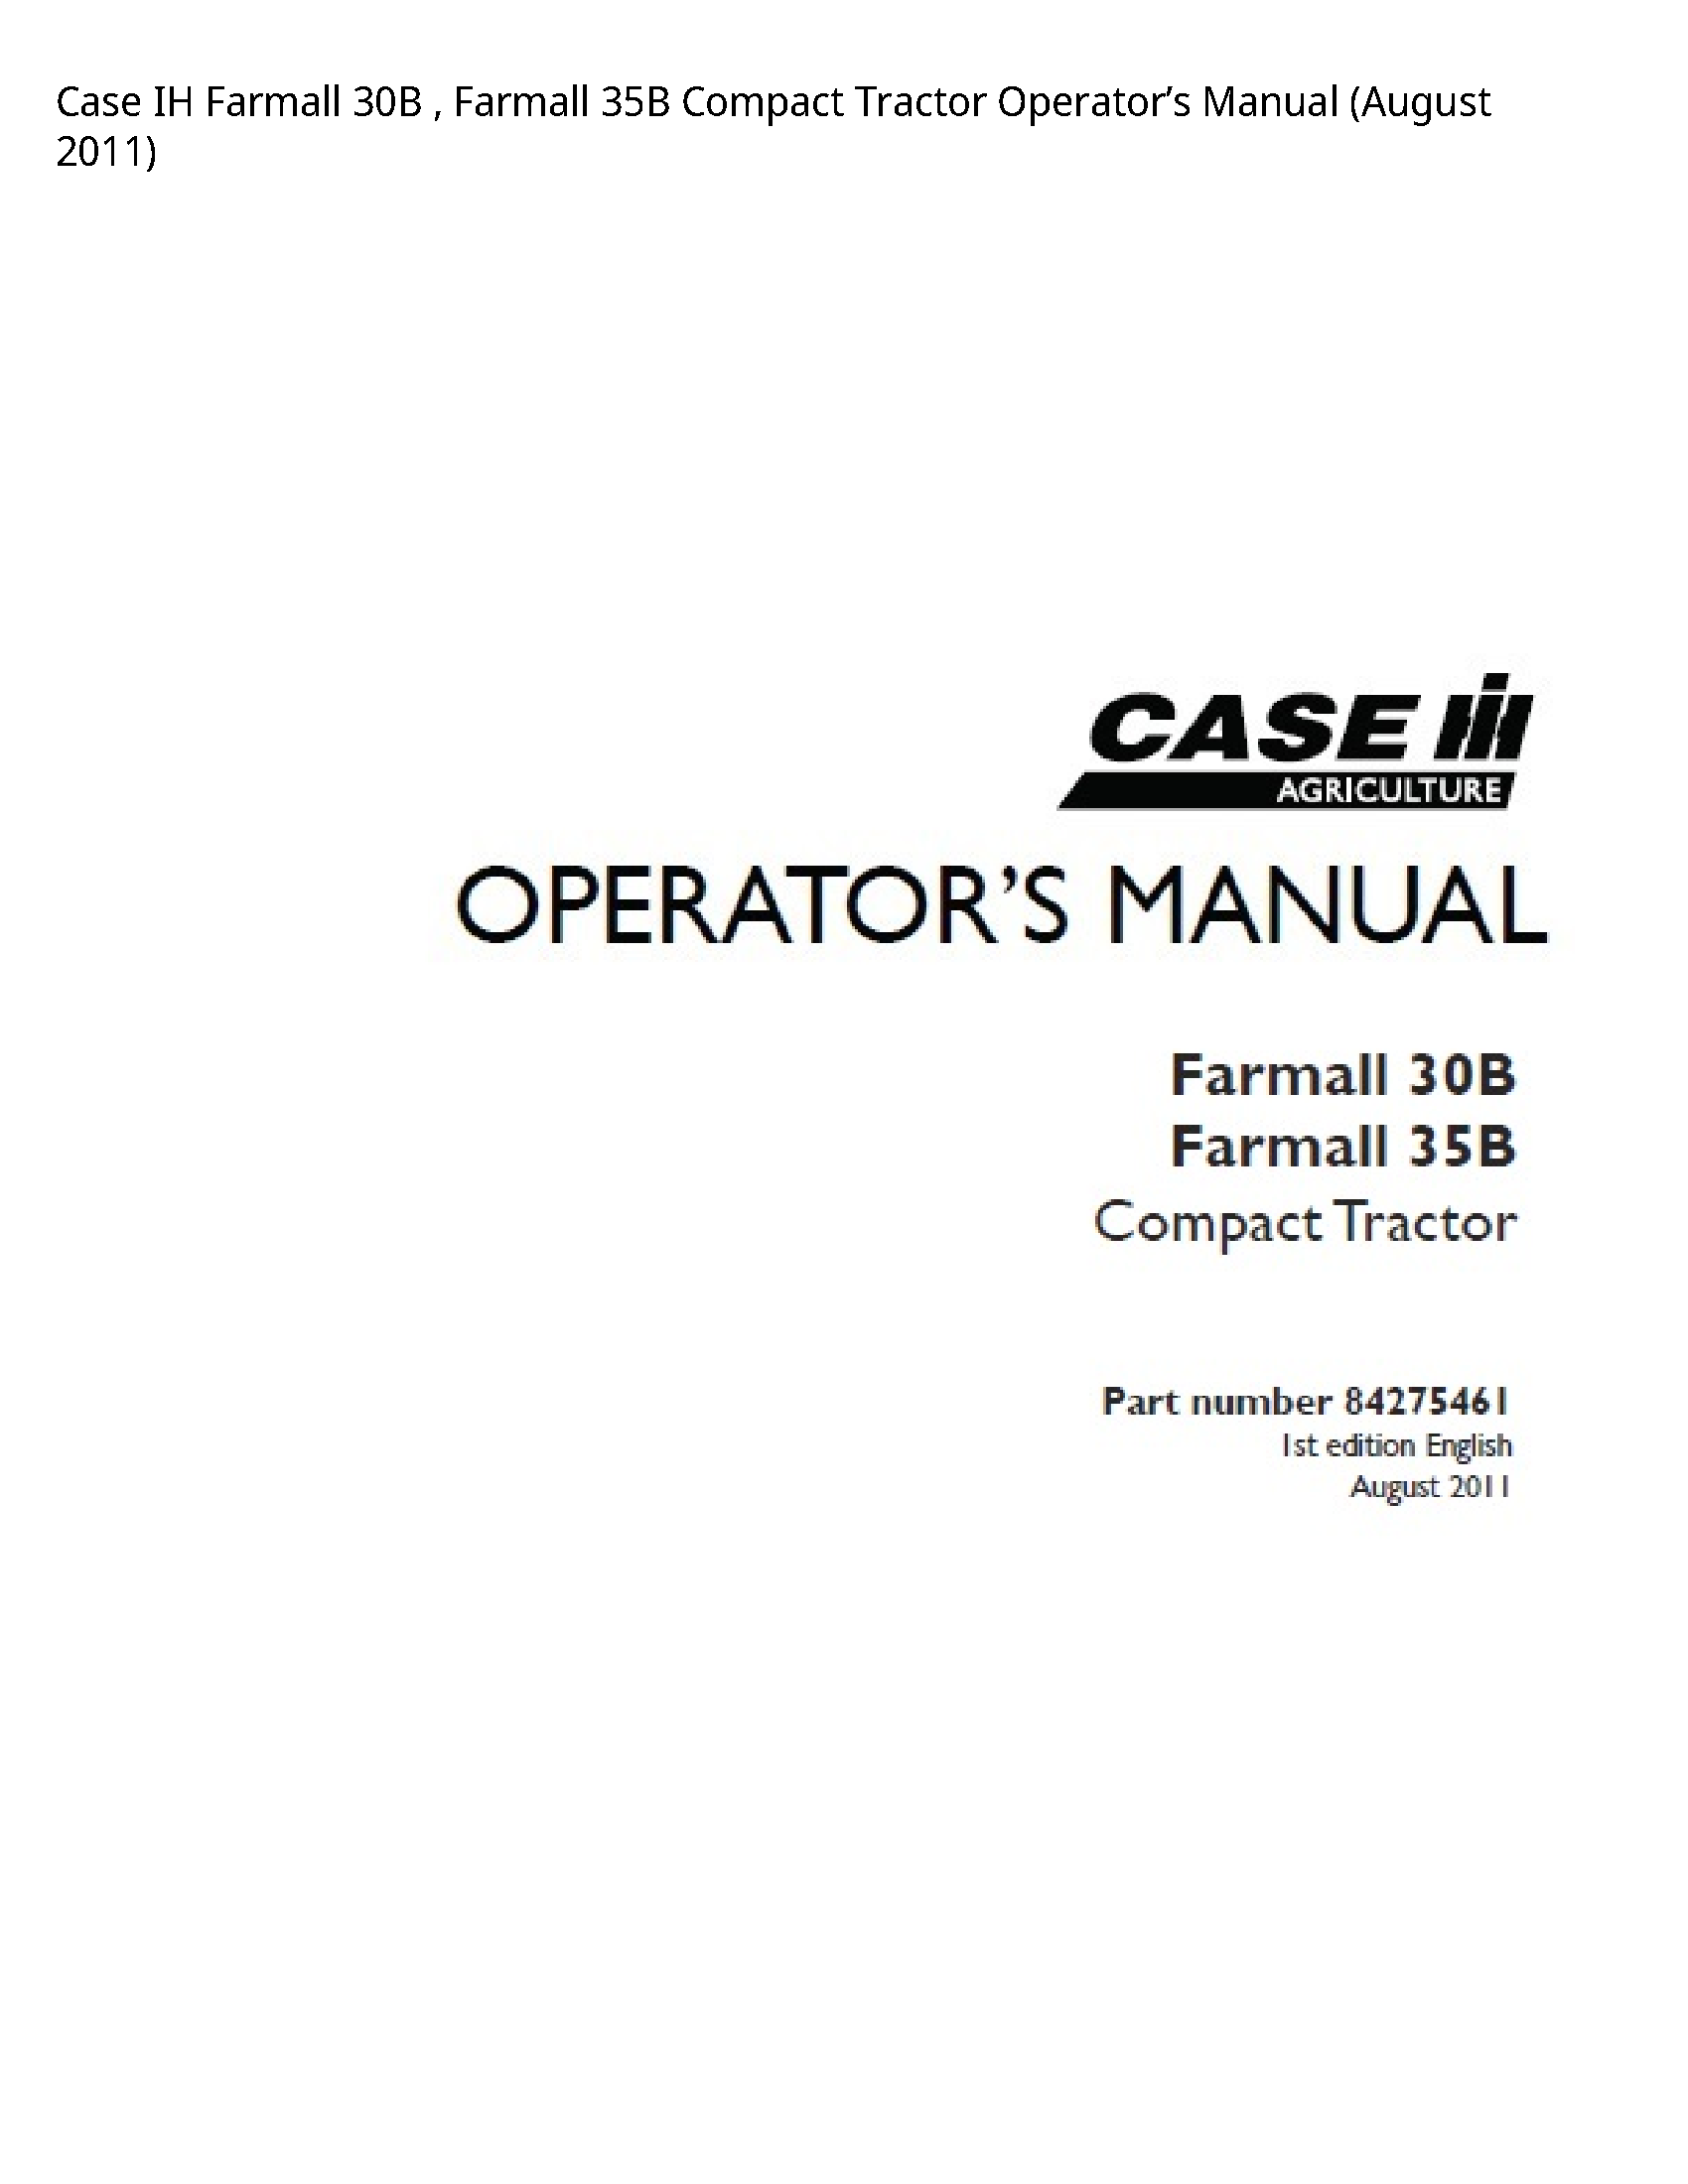 Case/Case IH 30B IH Farmall Farmall Compact Tractor Operator’s manual